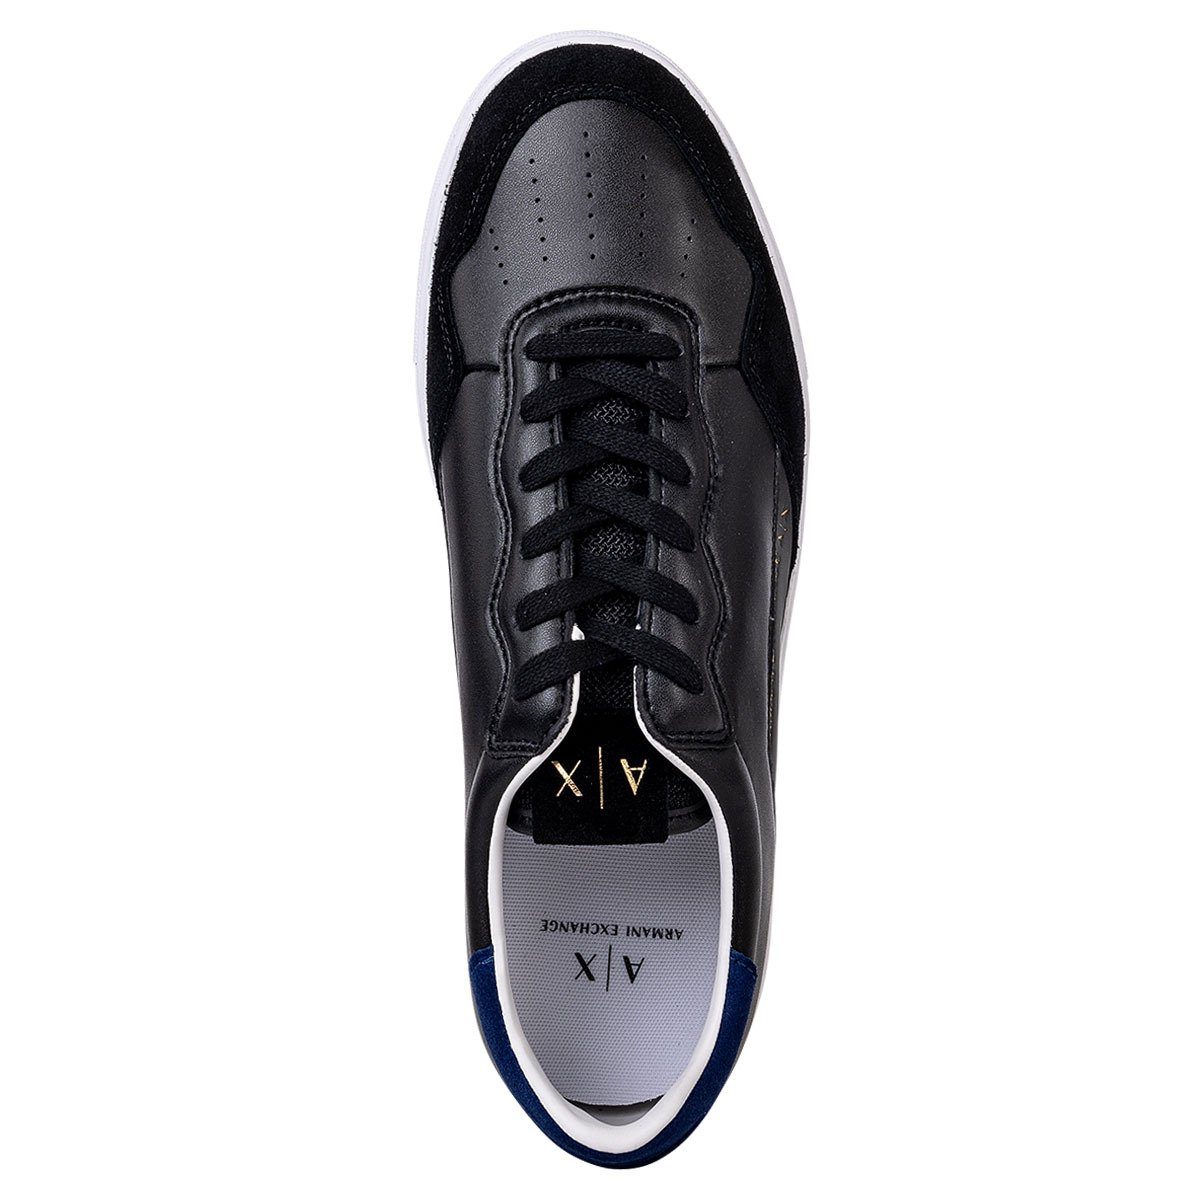 Schuhe Sneaker ARMANI EXCHANGE Herren Sneaker - Paris Premium Low Top Sneaker Sneaker